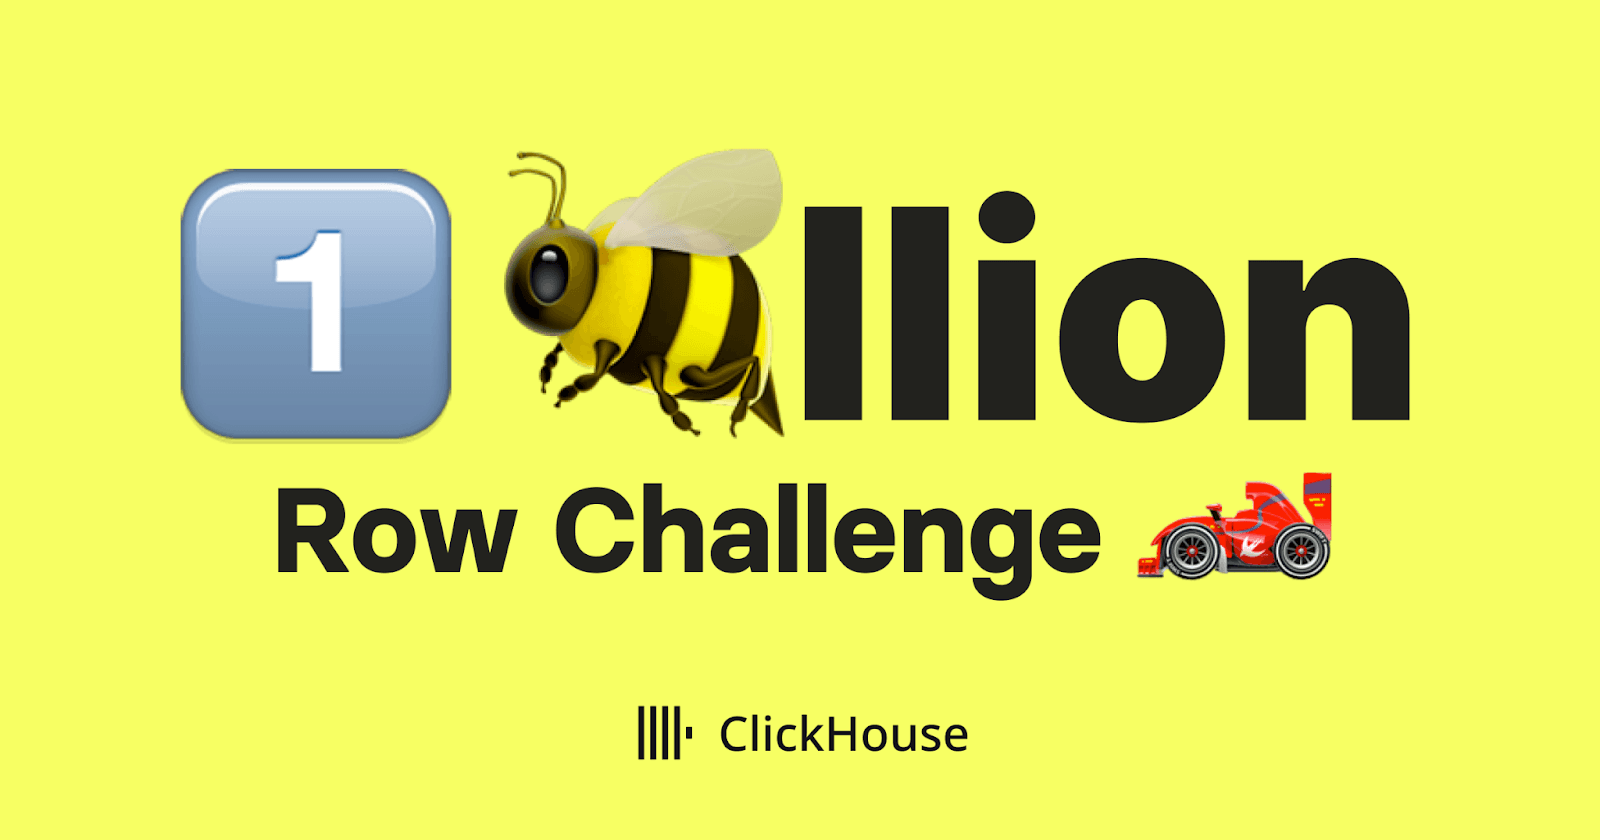 1_billion_row_challenge_clickhouse.png